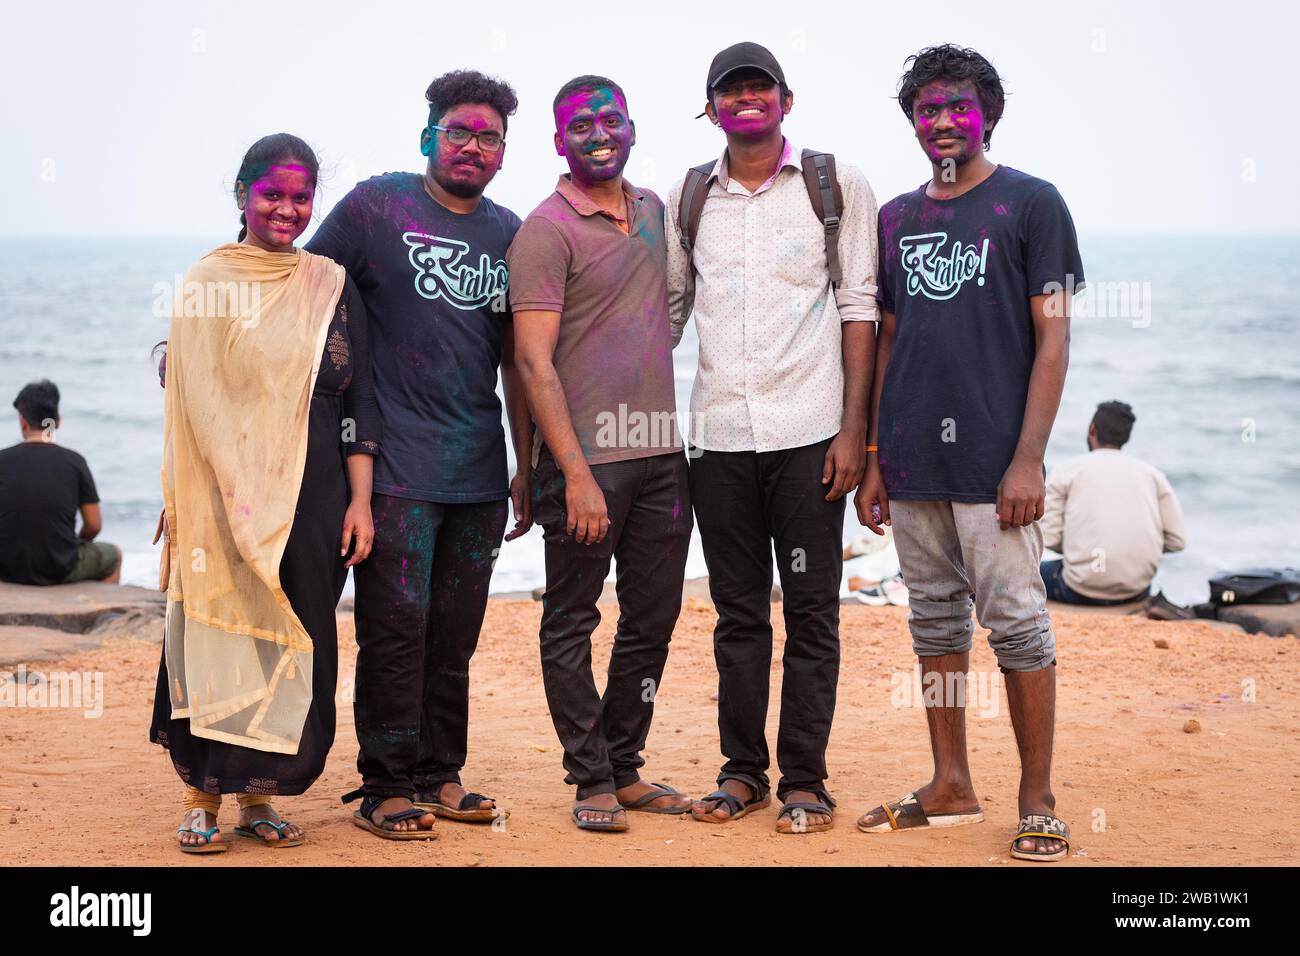 Gruppe junger Menschen mit Farbe im Gesicht, Holi Festival, indisches Frühlingsfest, traditionelles Farbenfest, Pondicherry oder Puducherry Stockfoto